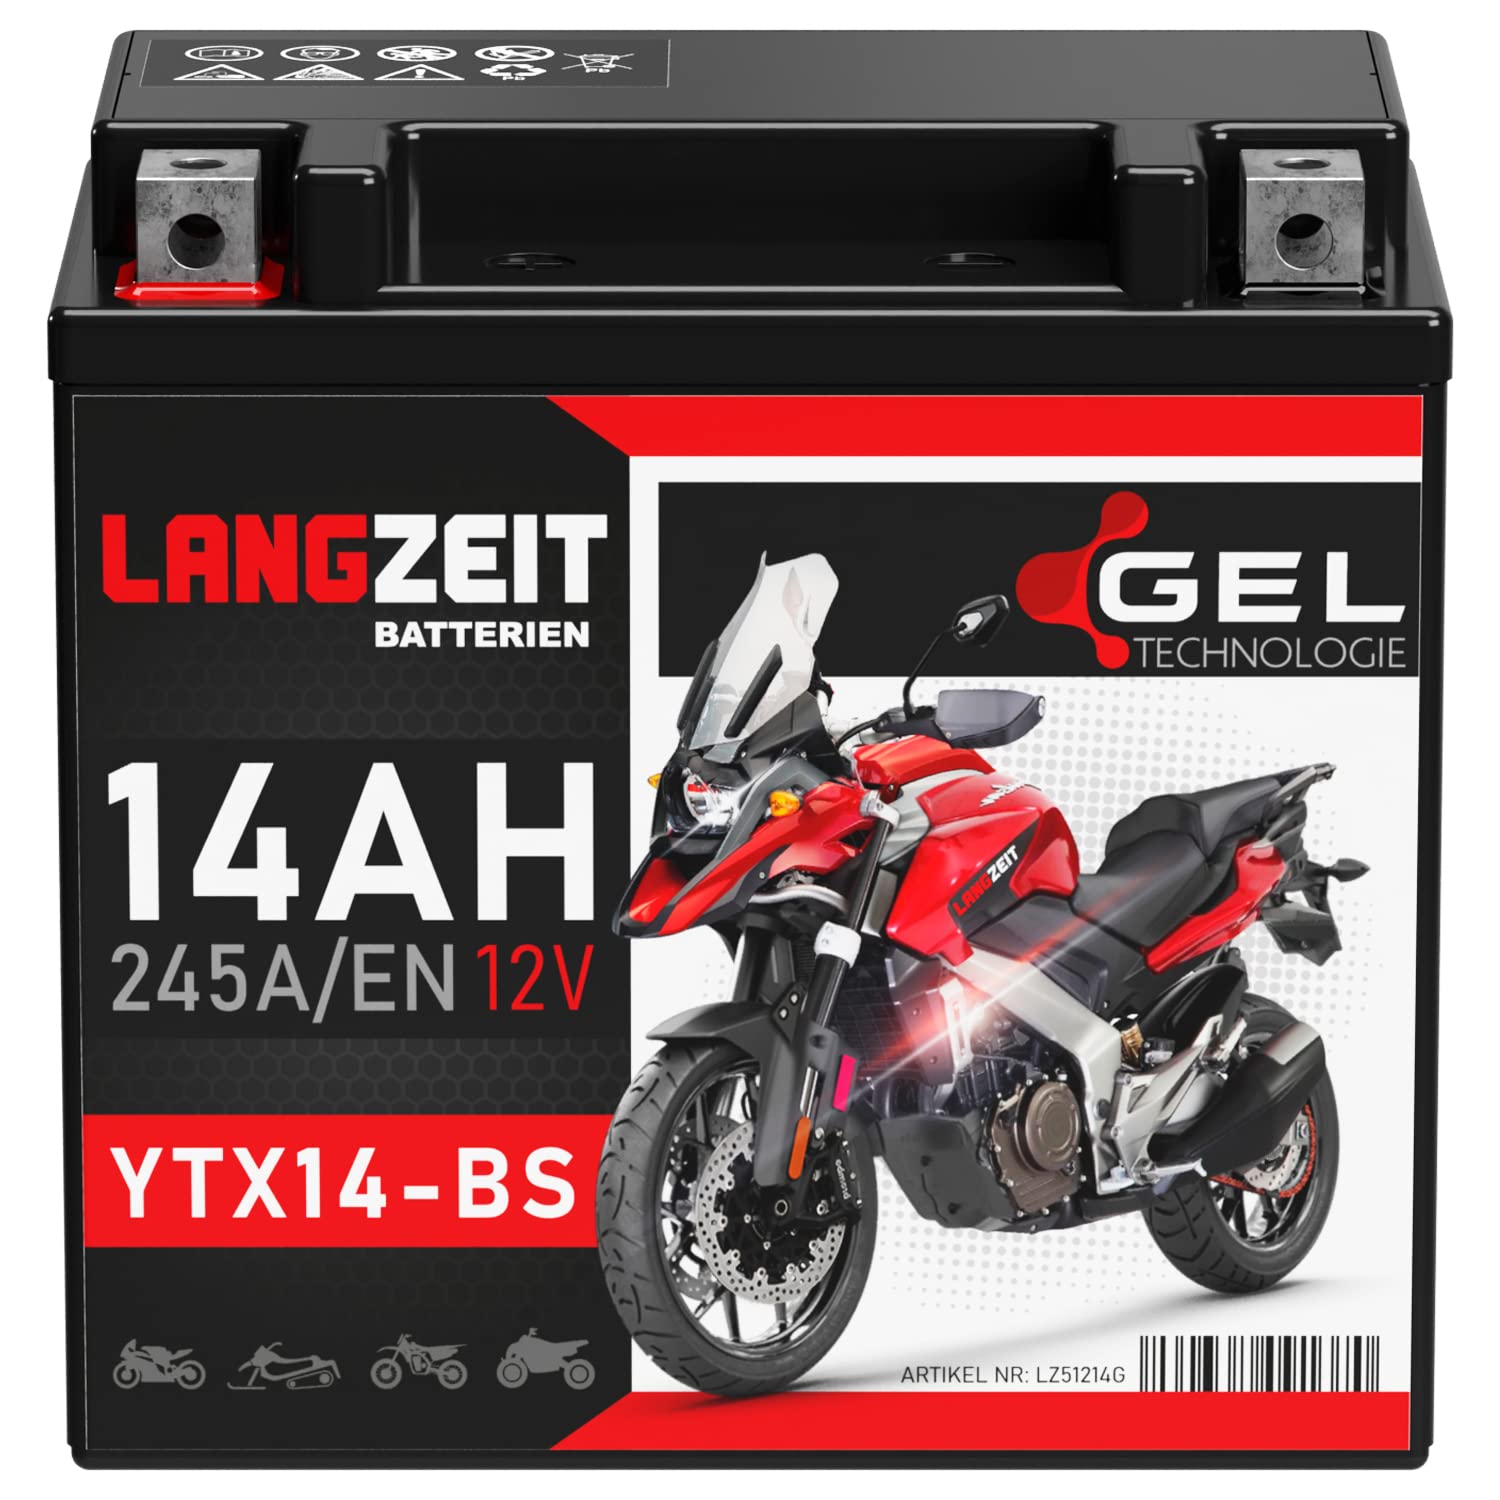 LANGZEIT YTX14-BS Motorradbatterie 12V 14Ah 245A/EN Gel Batterie 12V doppelte Lebensdauer entspricht 51214 YTX14-4 CTX14-BS GTX14-BS vorgeladen auslaufsicher wartungsfrei von LANGZEIT Batterien